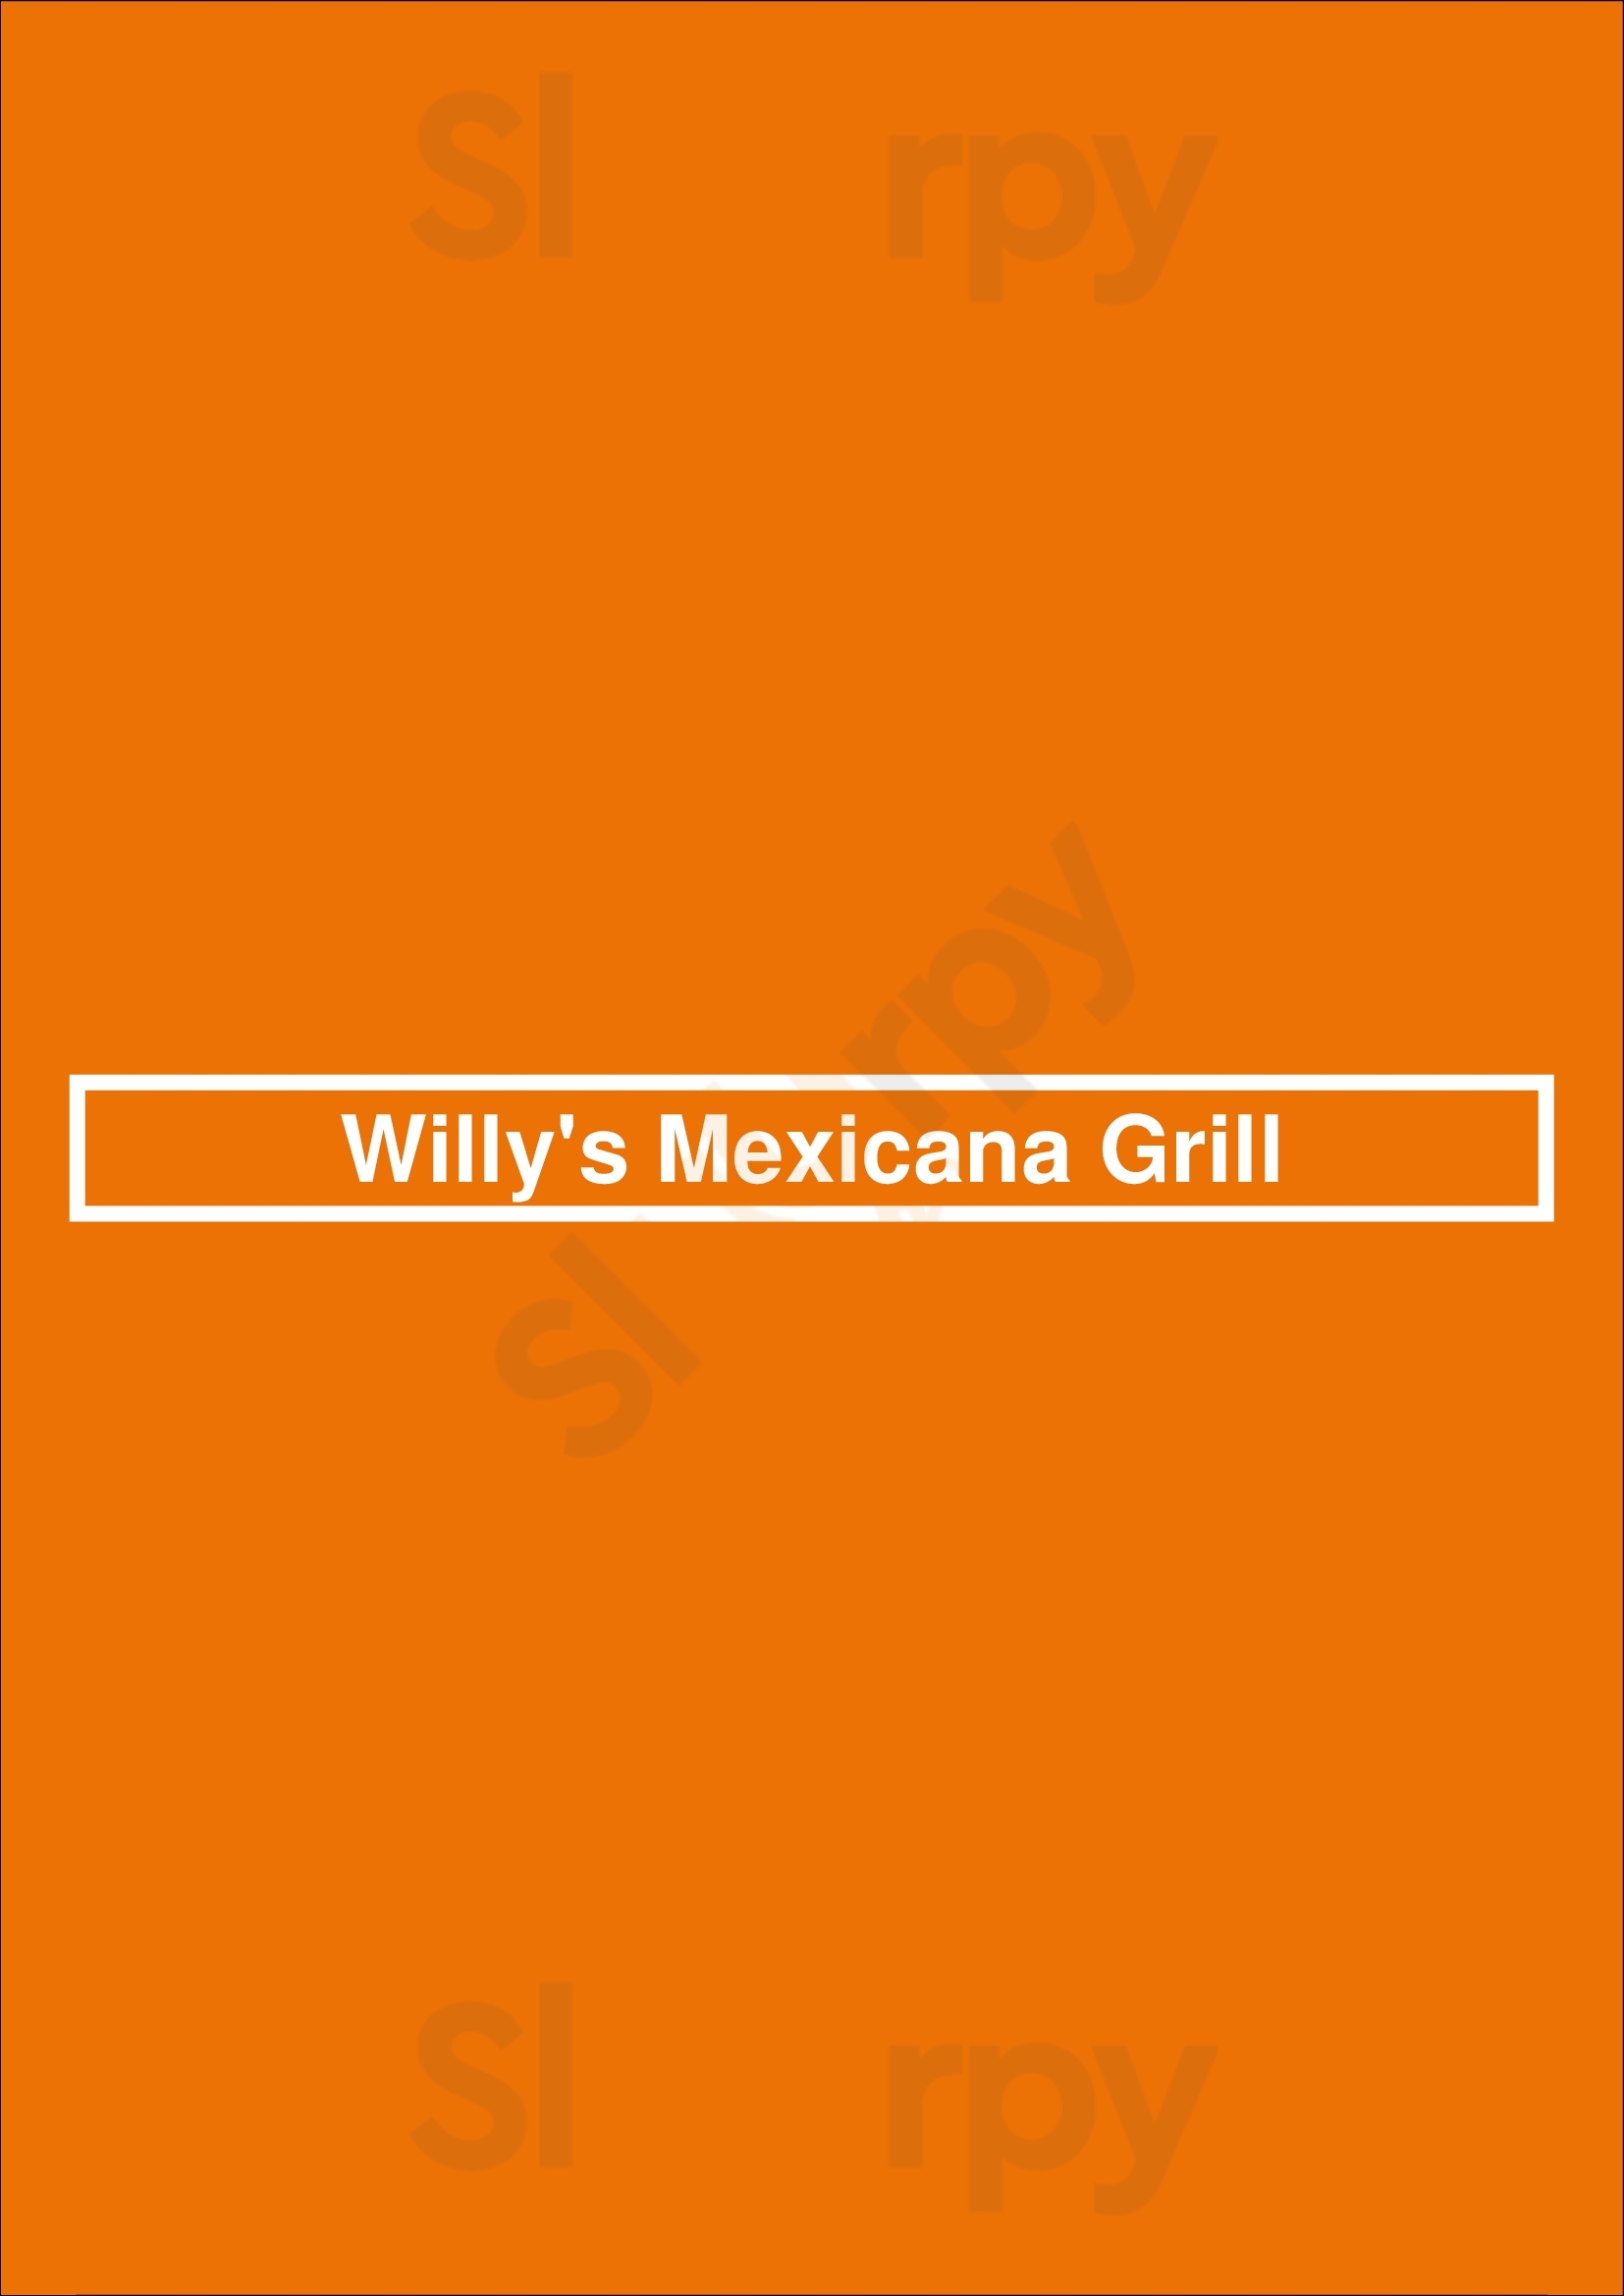 Willy's Mexicana Grill Marietta Menu - 1